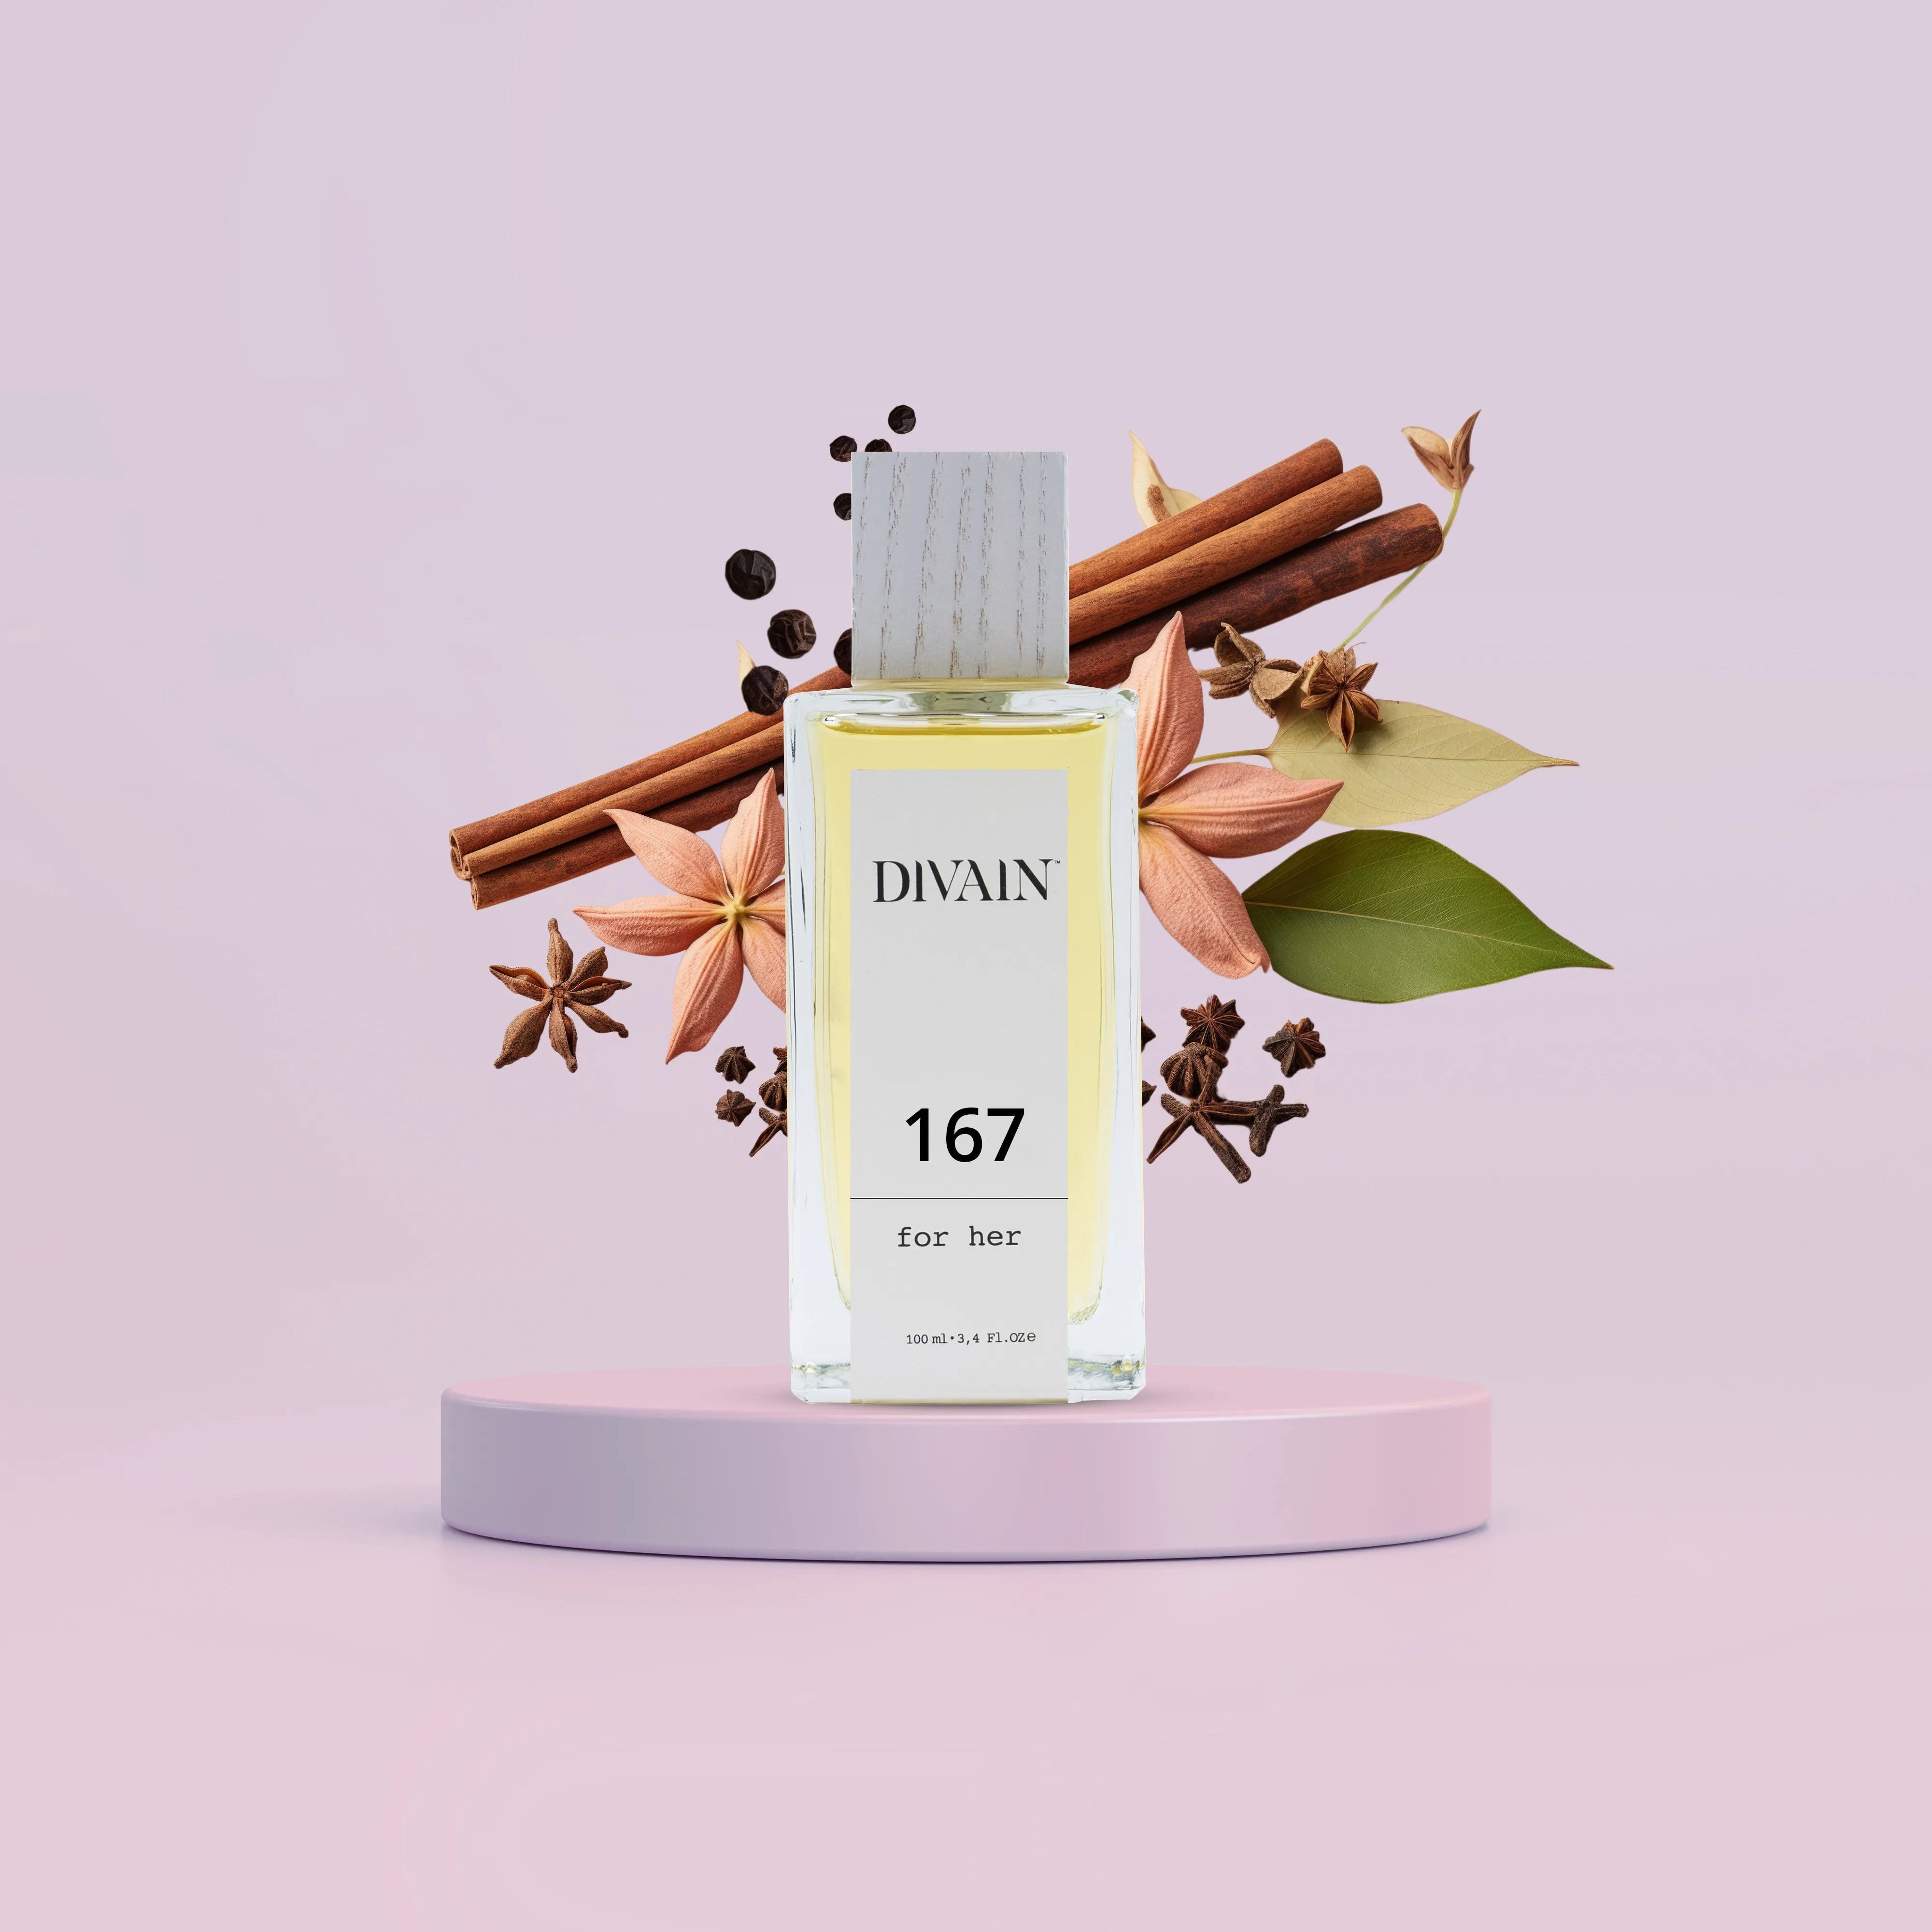 DIVAIN-167 | Likvärdig Black Opium från Yves Saint Laurent | Kvinna